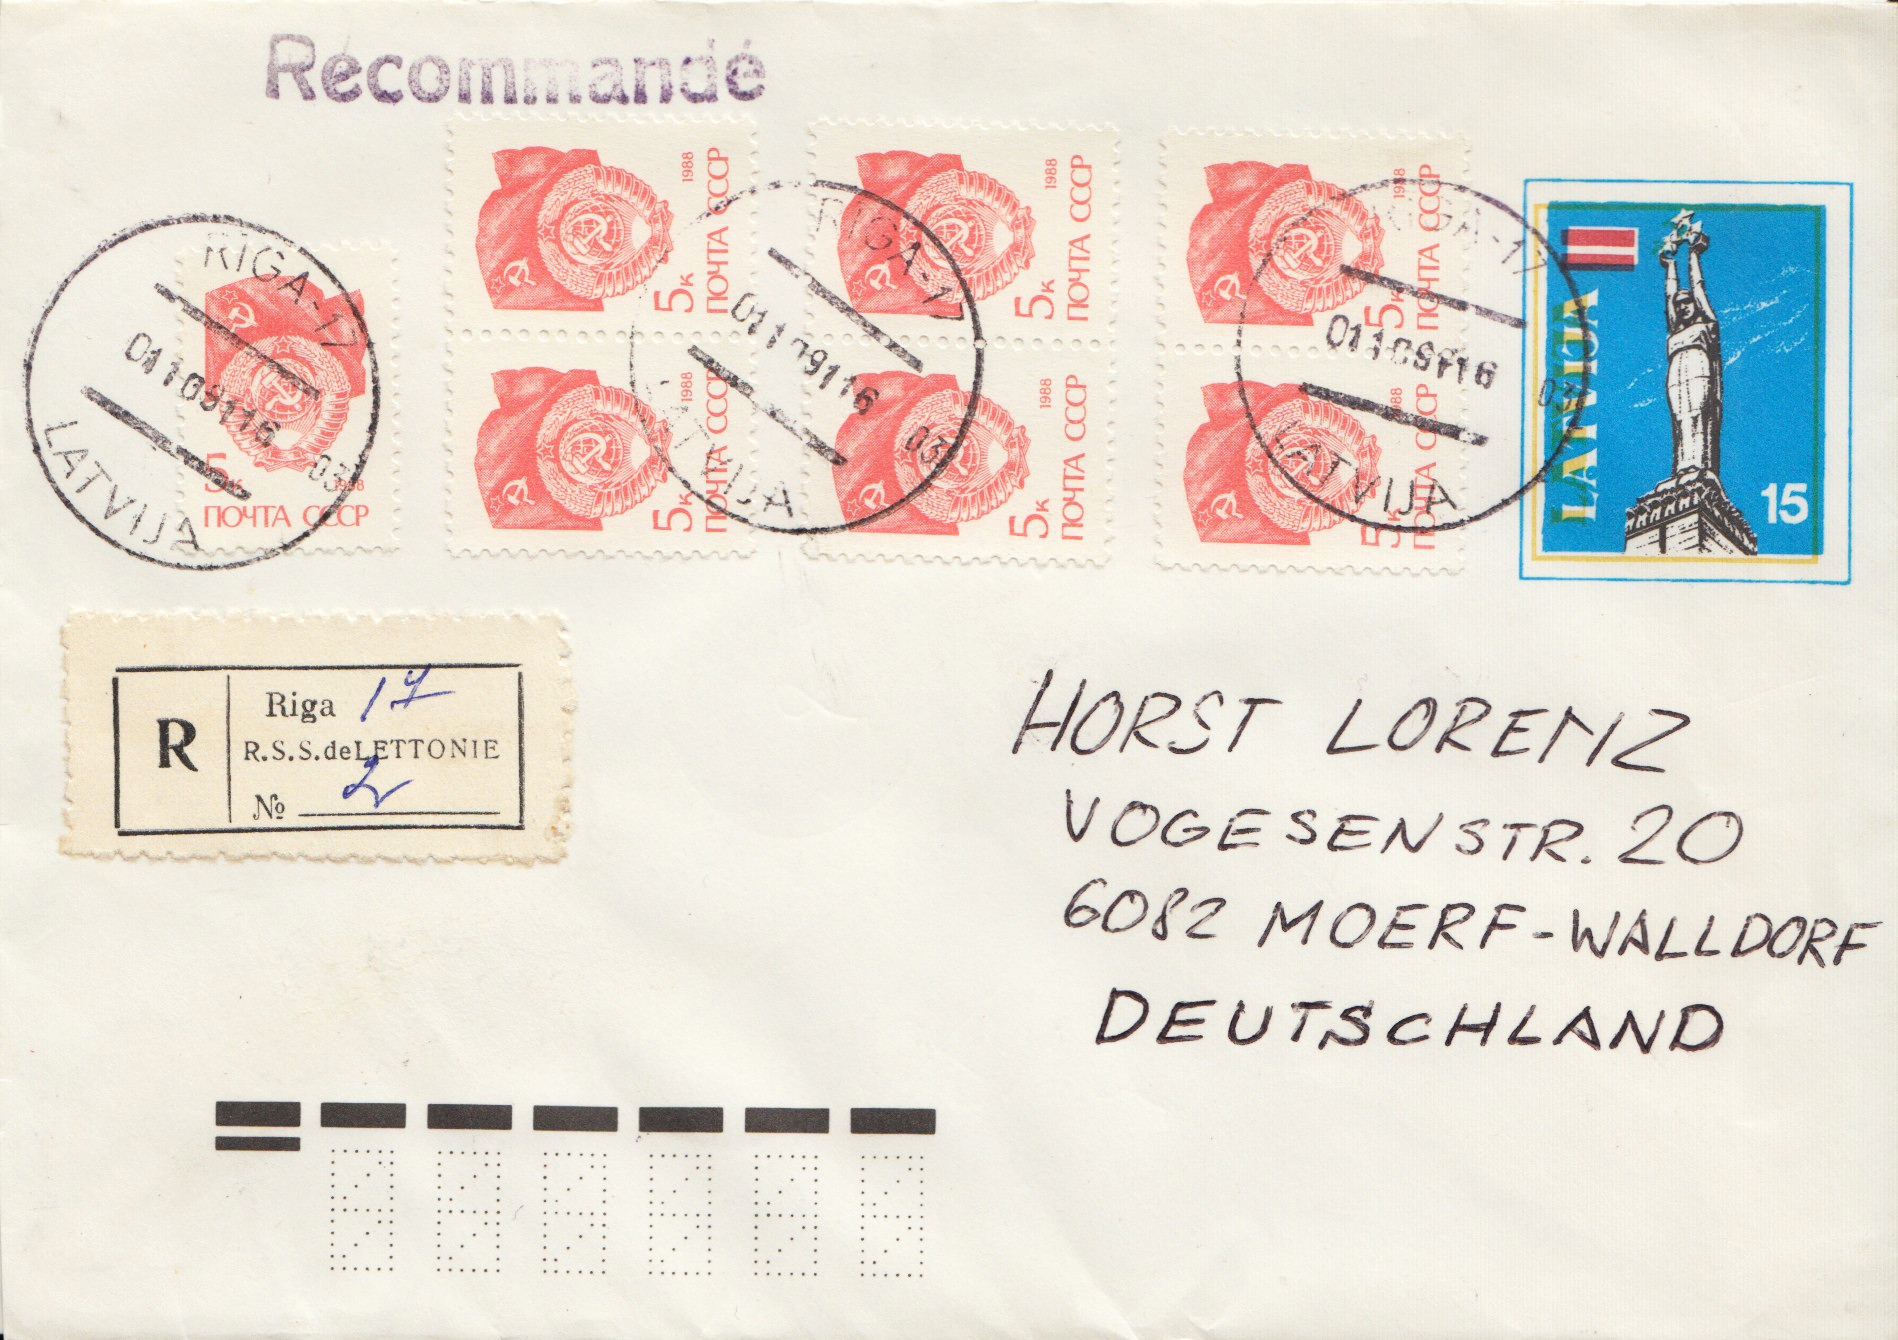 Mixed franking with Latvia postal stationary